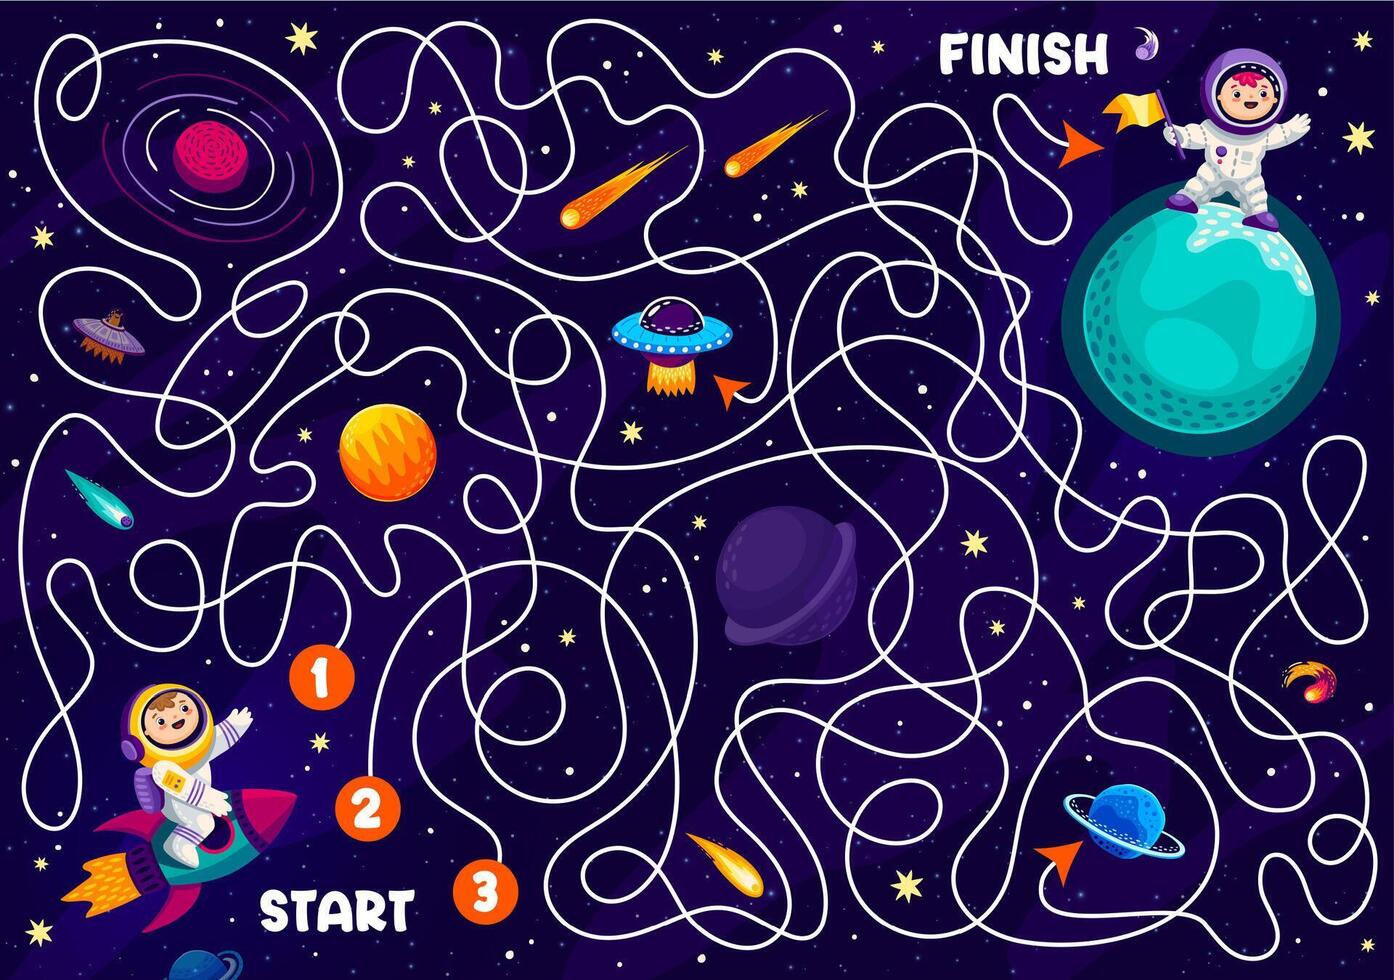 Raum Labyrinth Matze Spiel. Hilfe zu Kind Astronaut f vektor